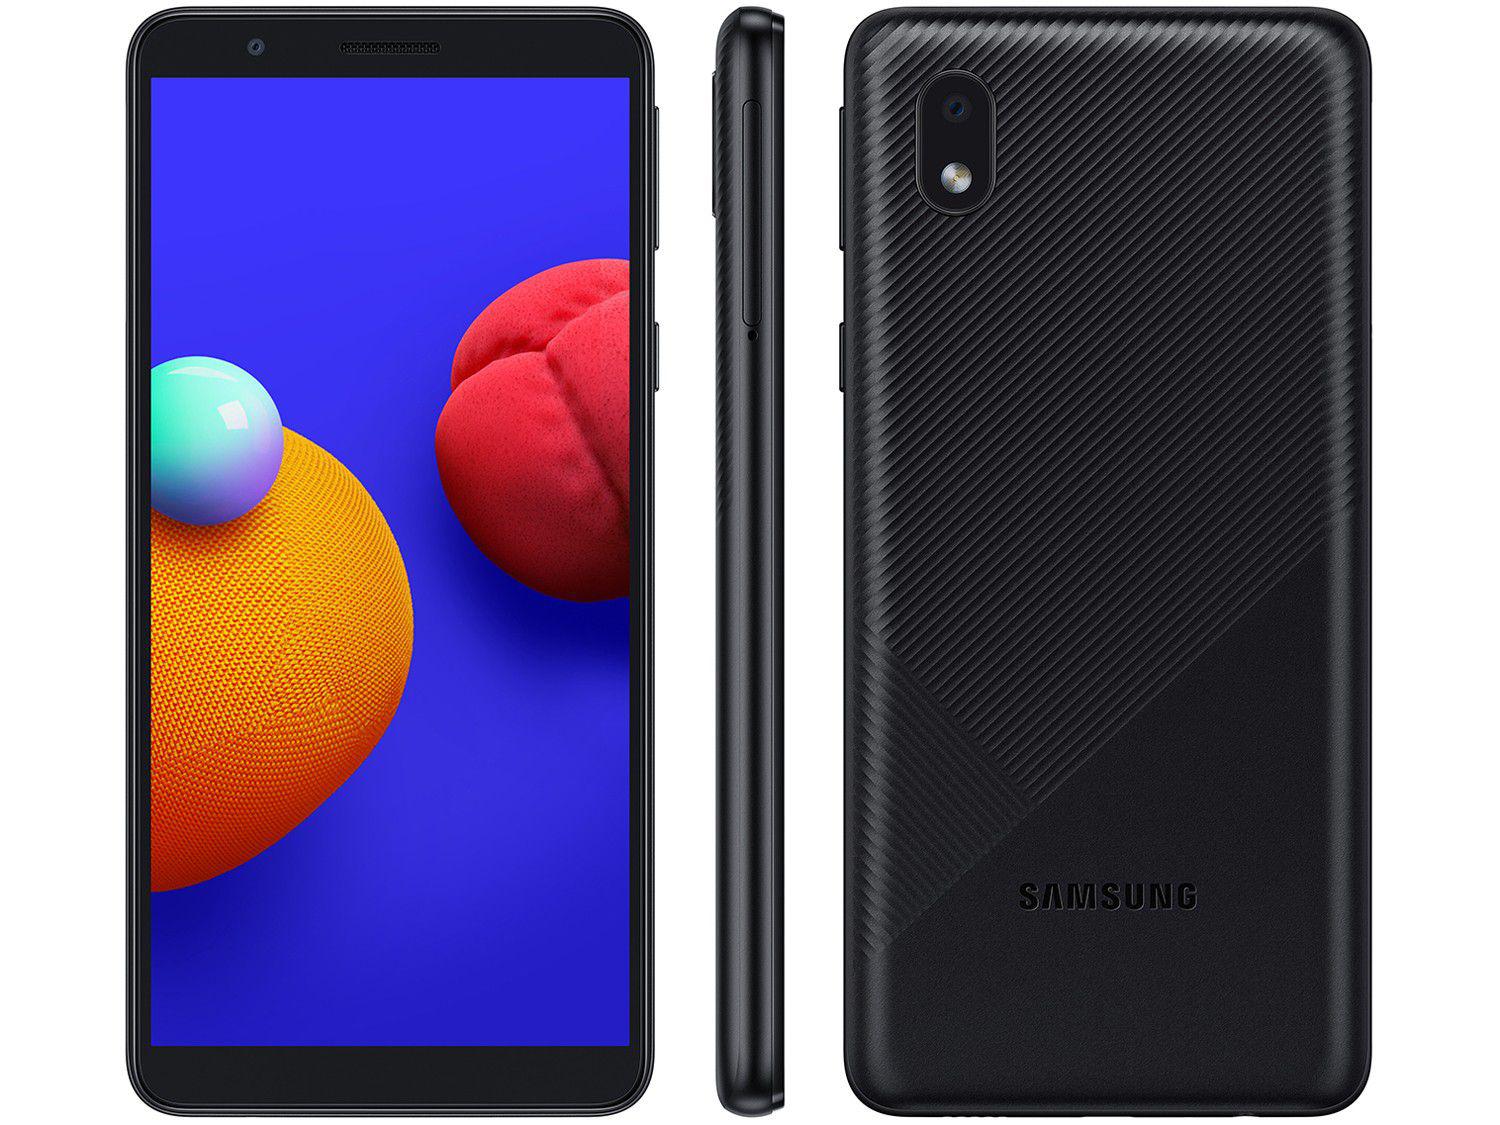 Smartphone Samsung Galaxy A01 Core 32GB Preto - Quad-Core 2GB RAM Tela 5,3” Câm. 8MP + Selfie 5MP